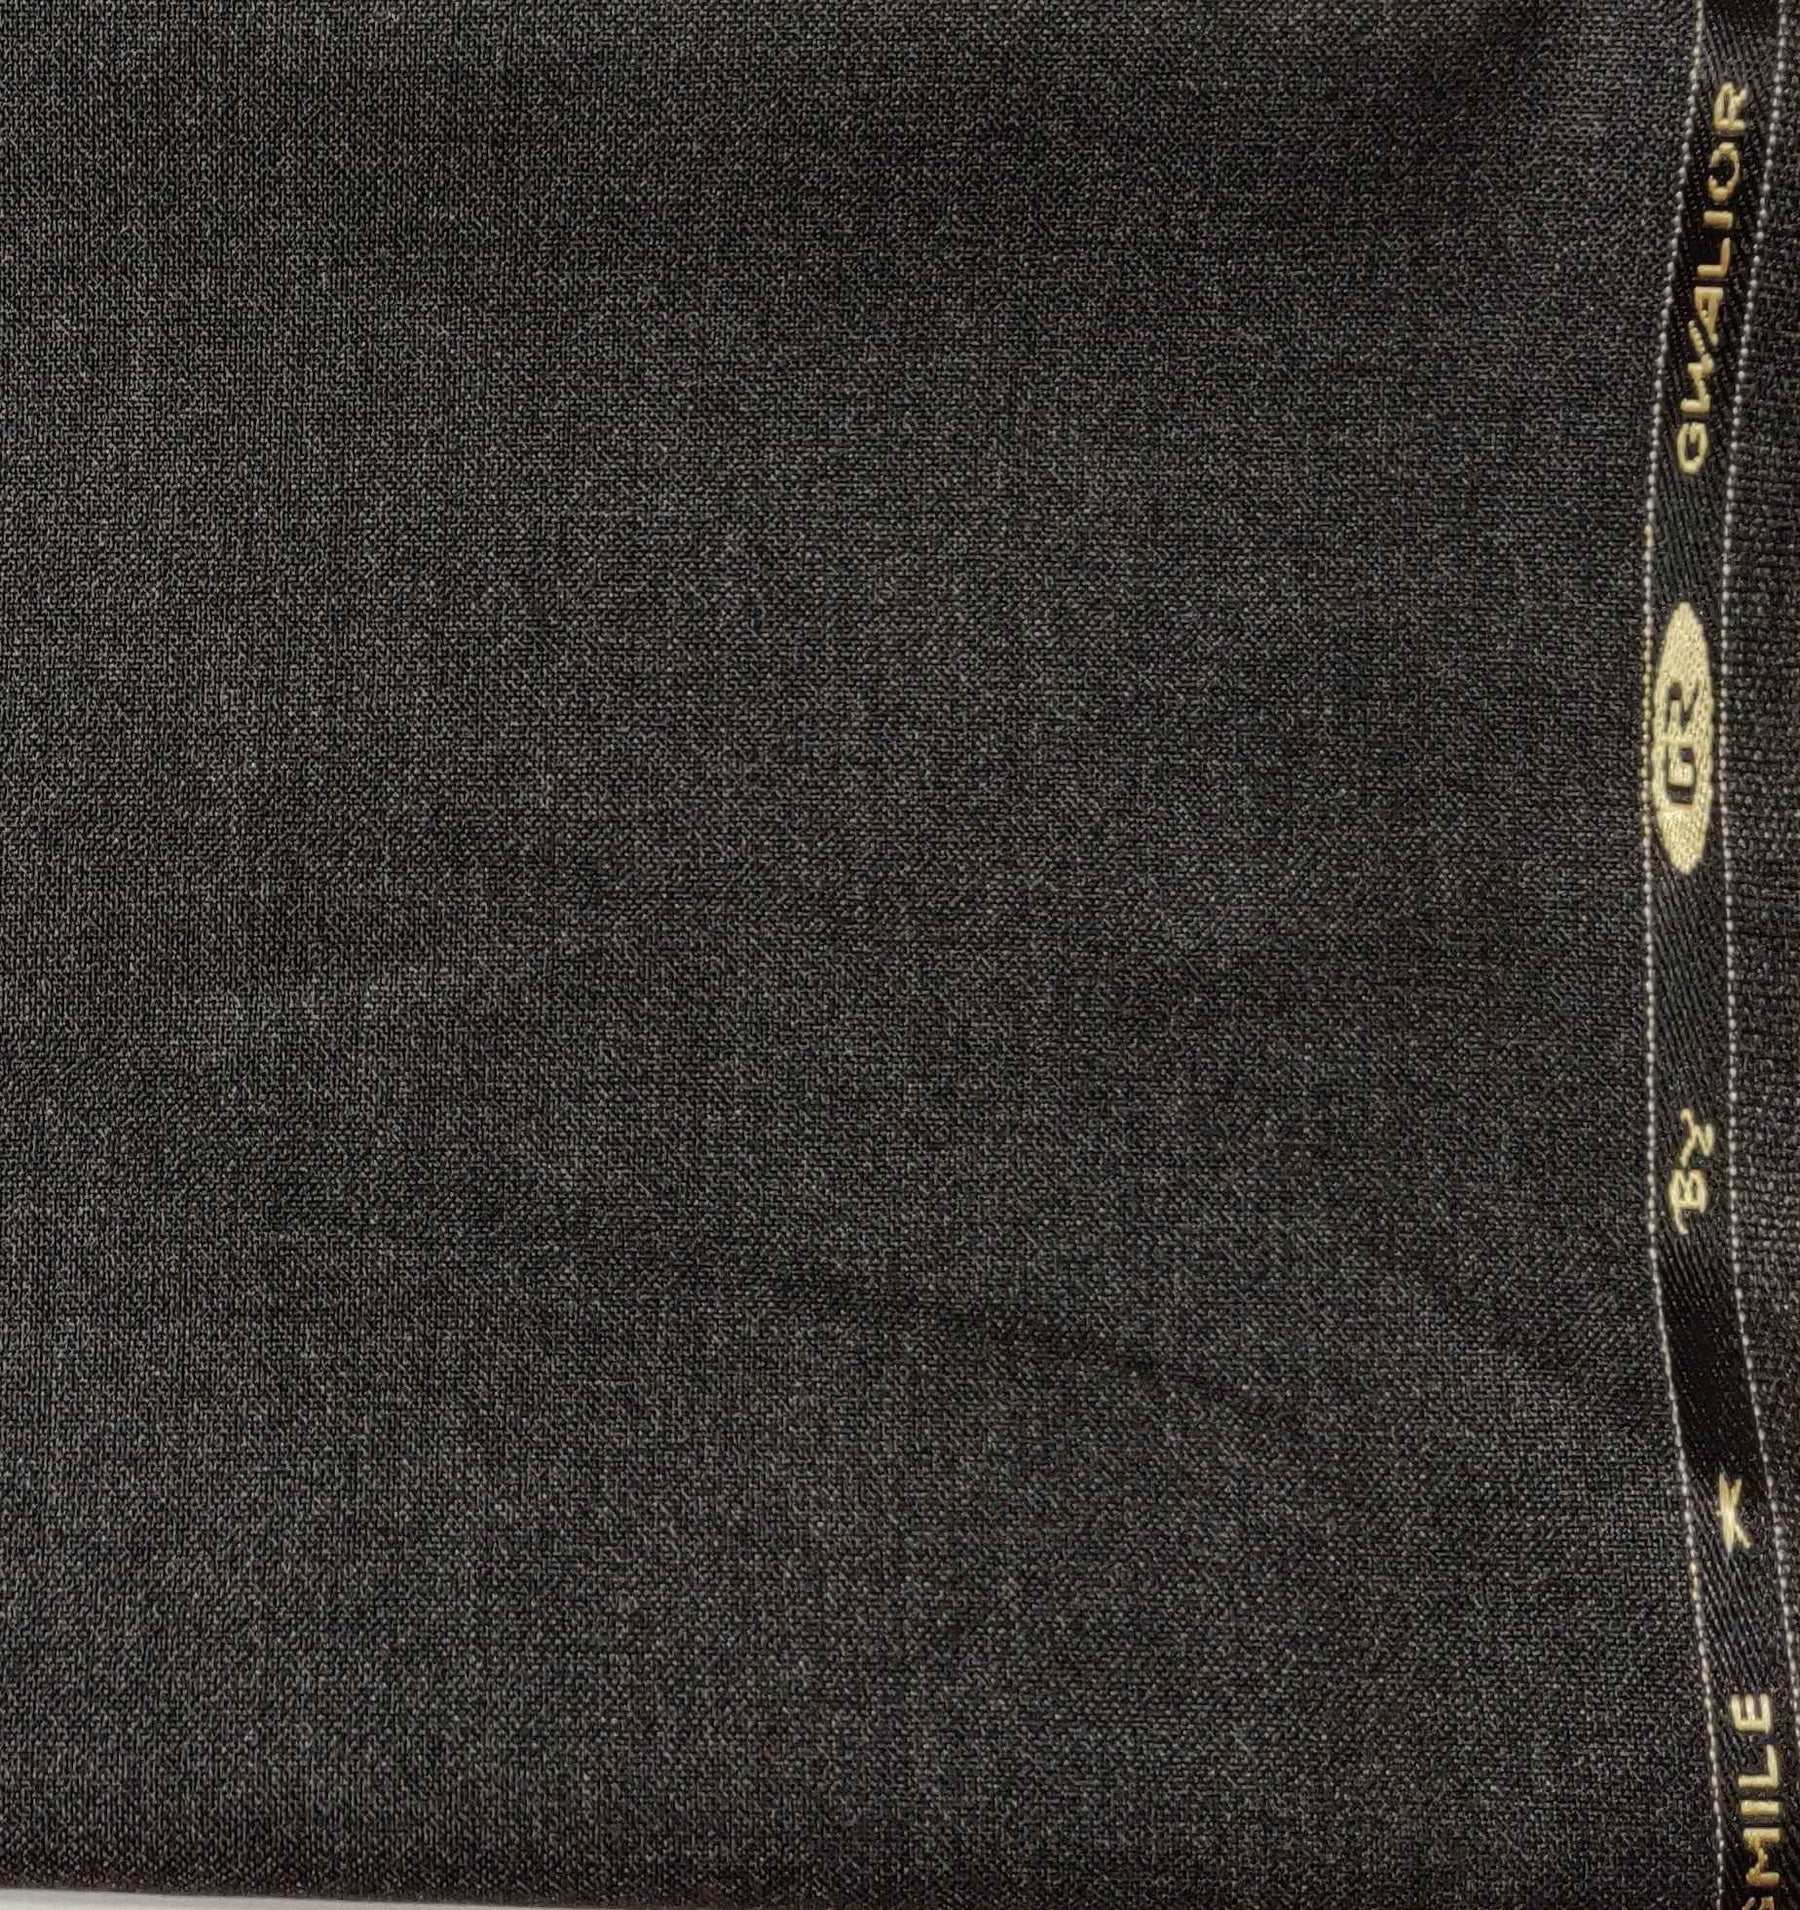 Gr Gwalior matti worsted grey Trouser fabric - ManTire